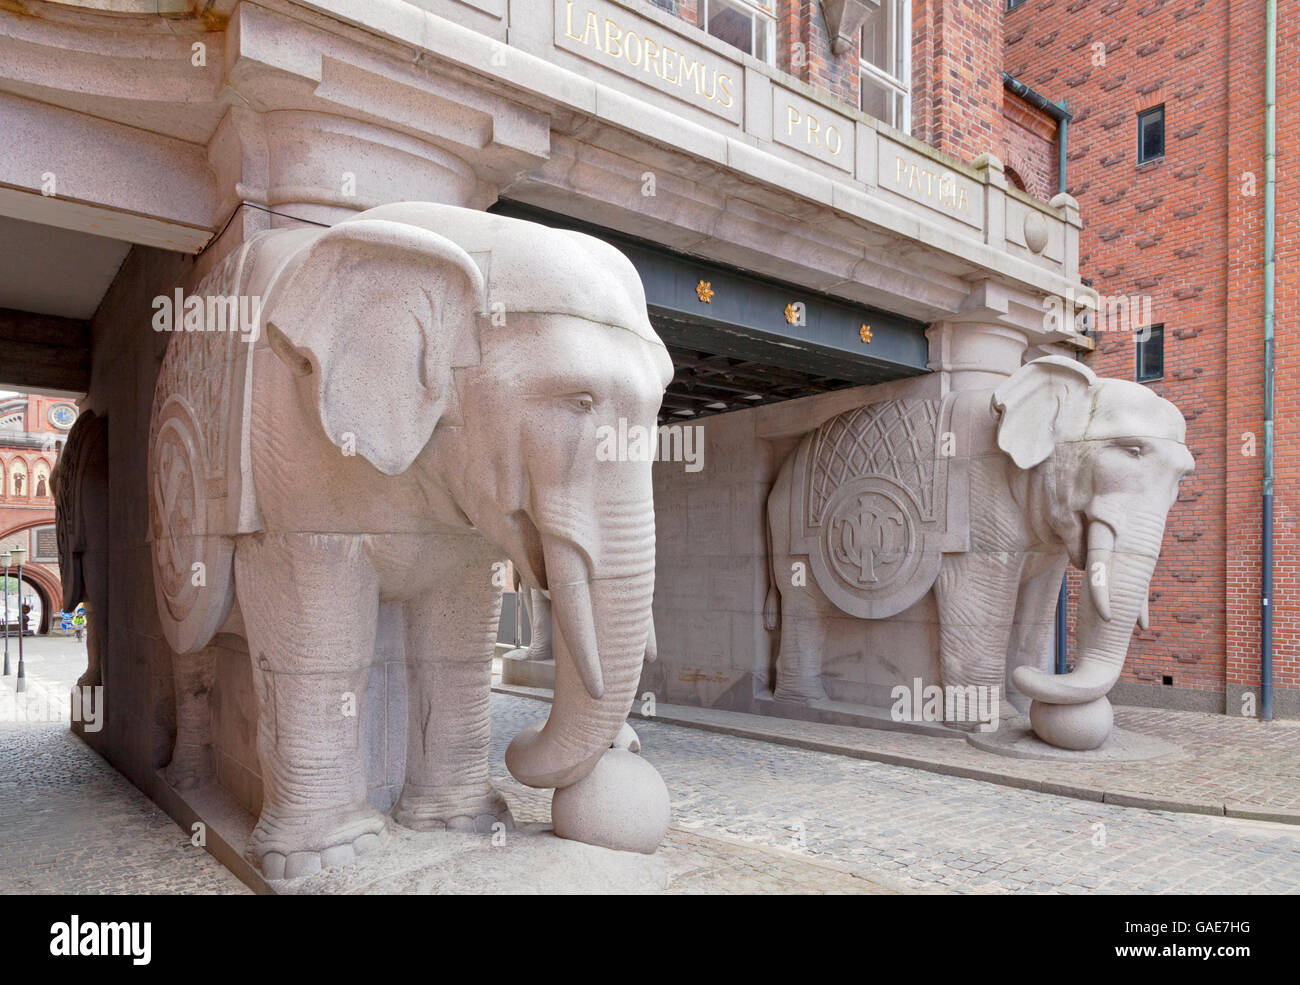 Elefantporten, l'Elefante Gate è l'ingresso da Valby lato per la vecchia fabbrica di birra Carlsberg area in Copenhagen, Danimarca. Foto Stock